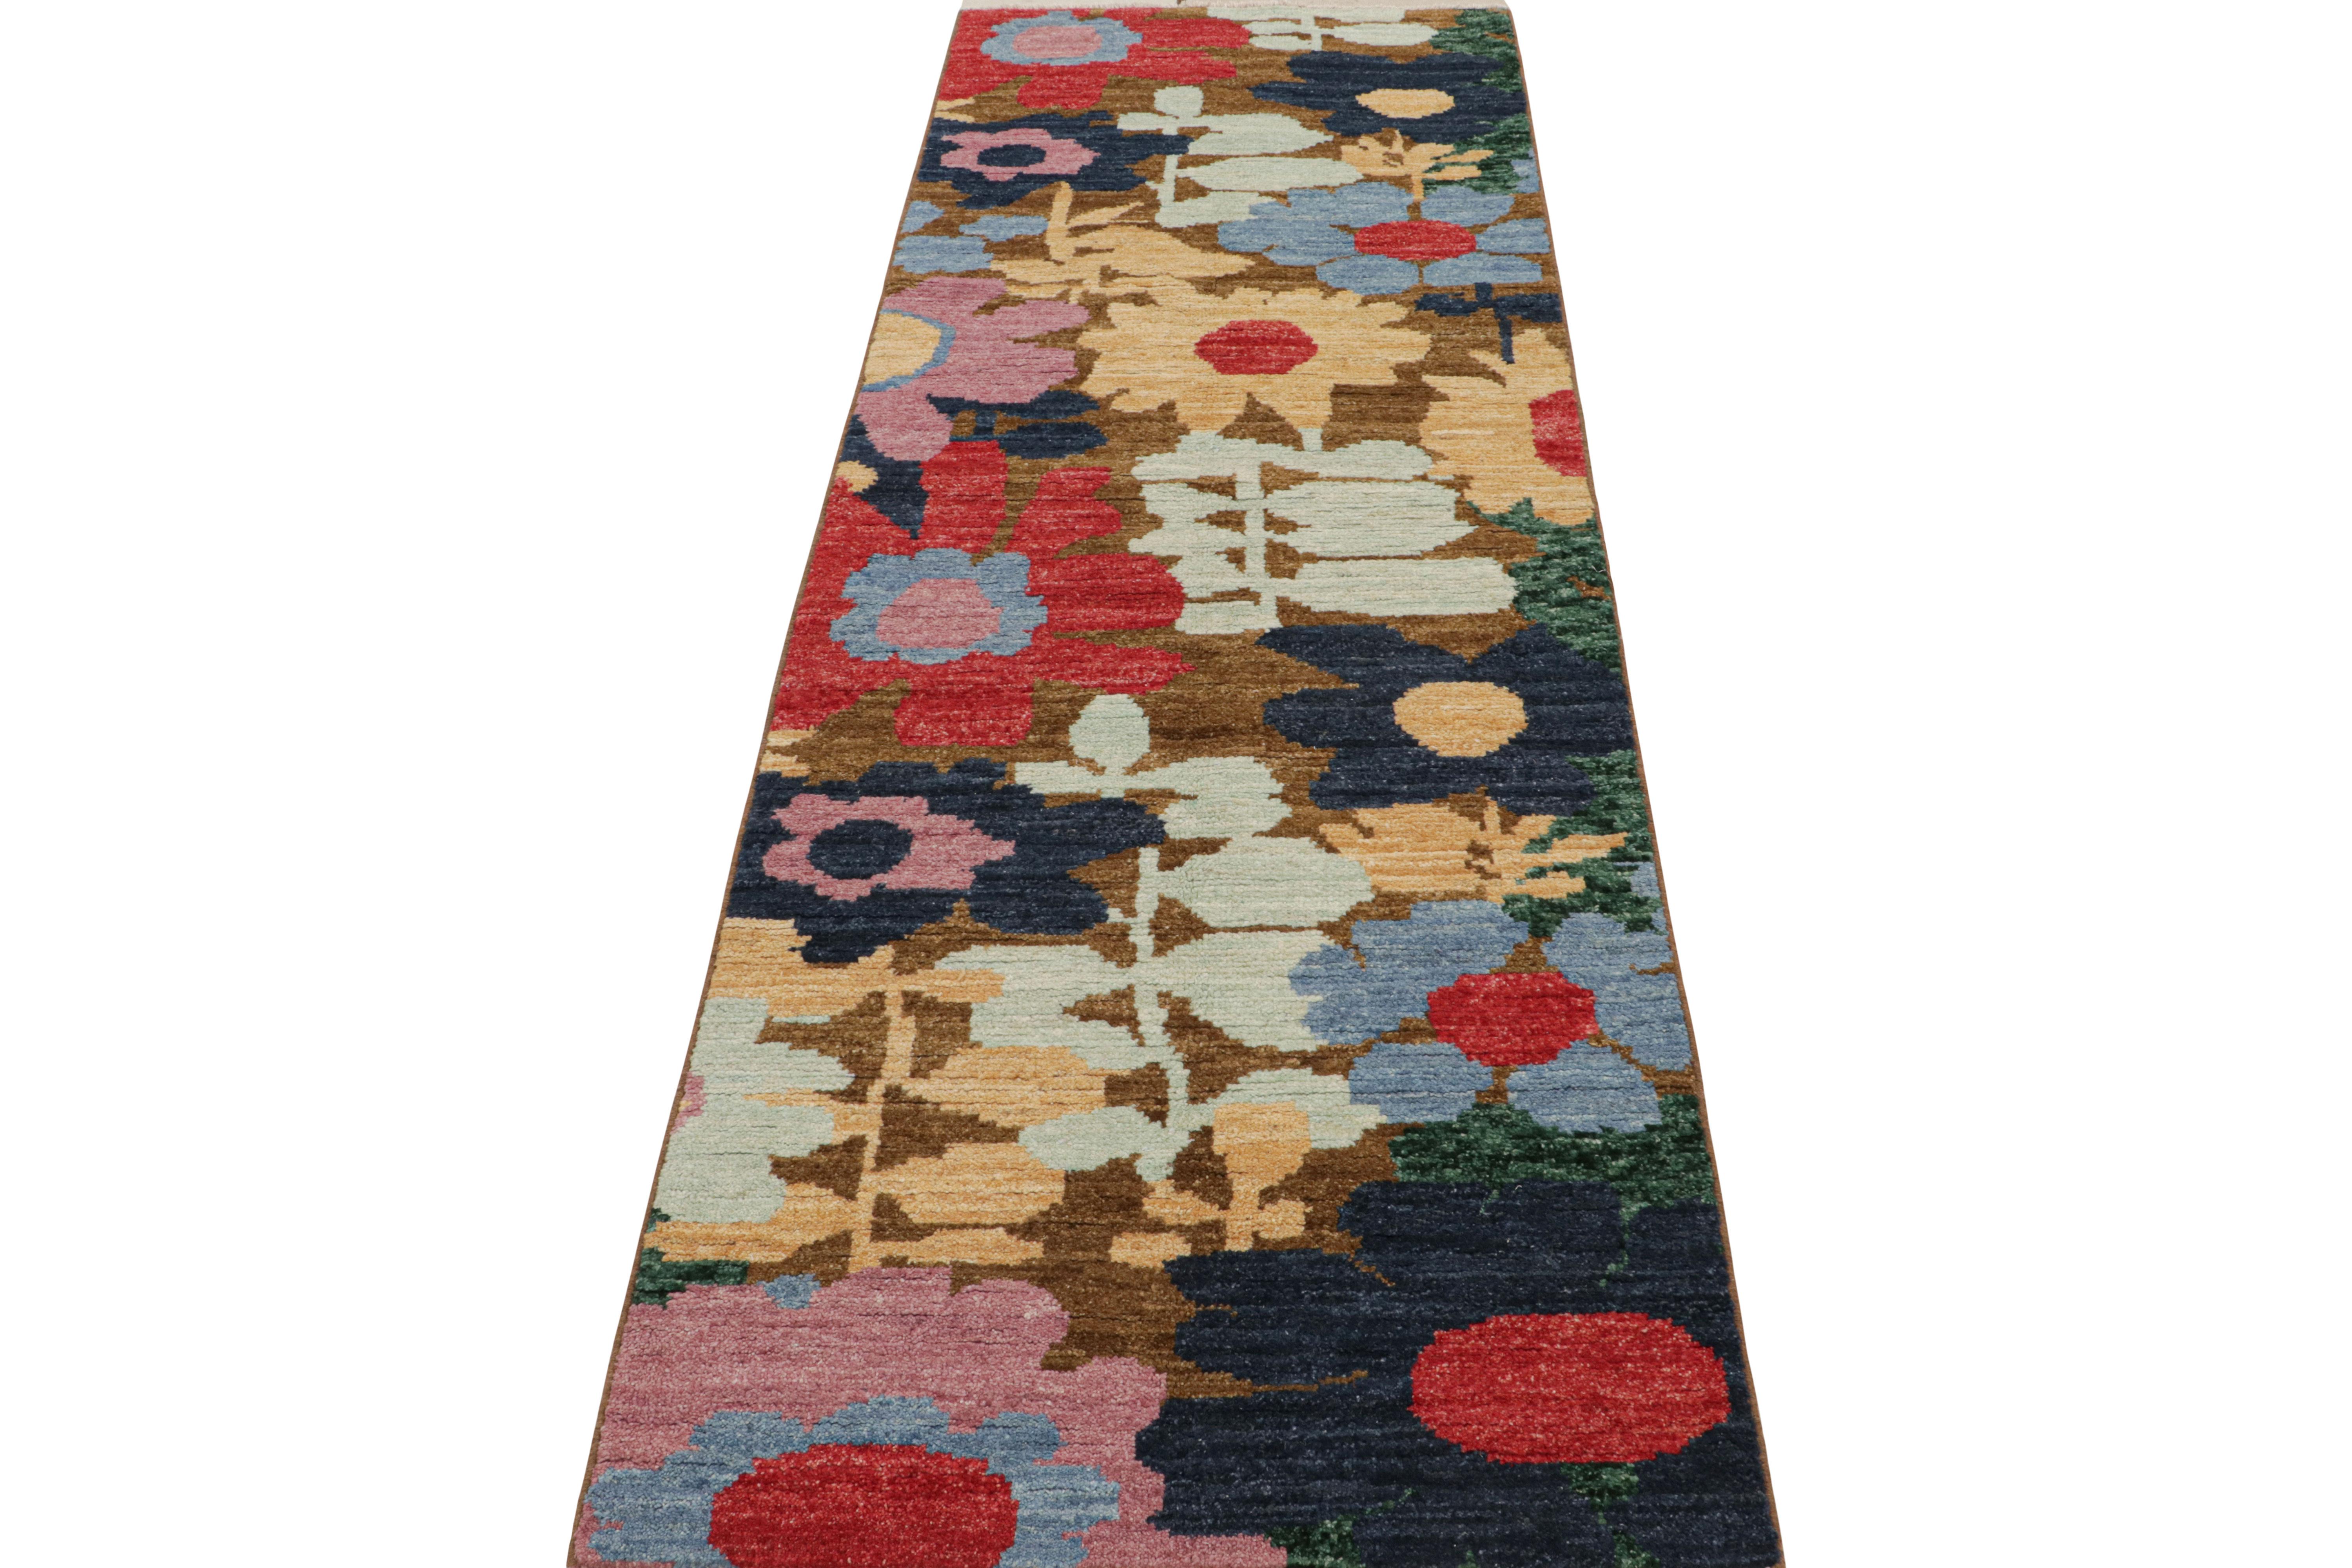 Ce tapis contemporain 3x8 est un nouvel ajout à la collection de tapis modernes de Rug & Kilim. Noué à la main en laine, son design est une audacieuse interprétation abstraite de motifs botaniques.

Sur le Design : 

Ce design particulier utilise